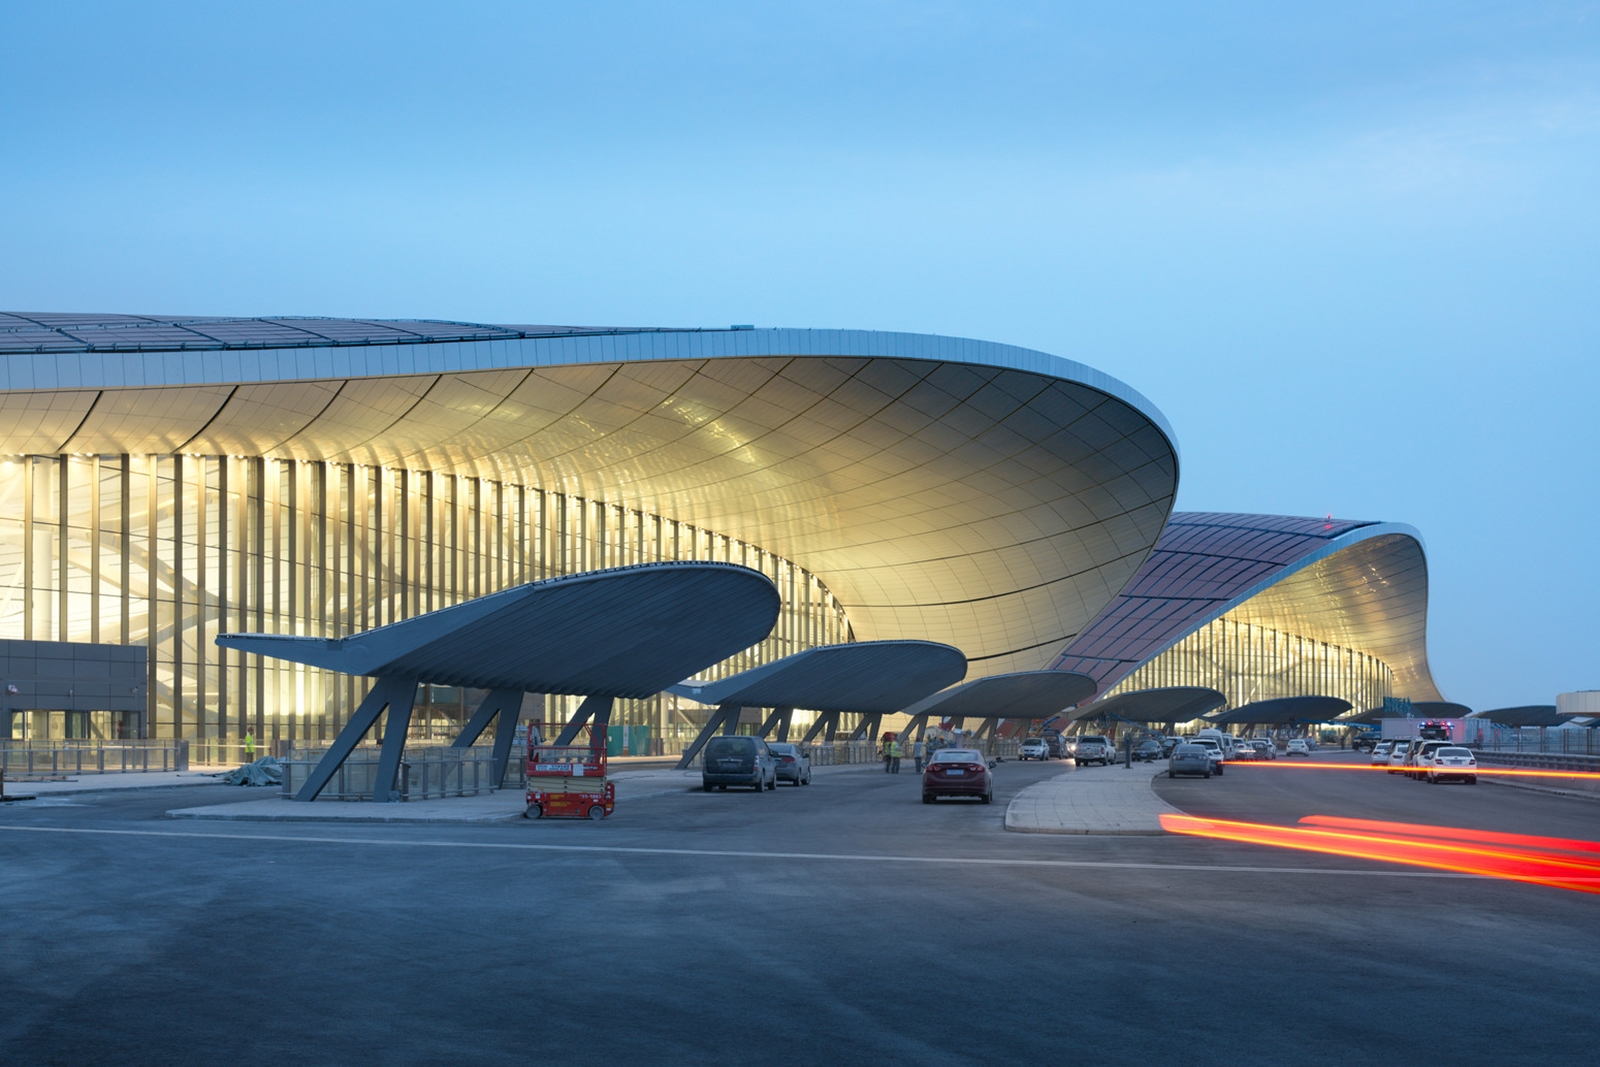  空港のカーブサイド。波打つような屋根が特徴的だ（写真：Zhou Ruogu Architecture Photography）